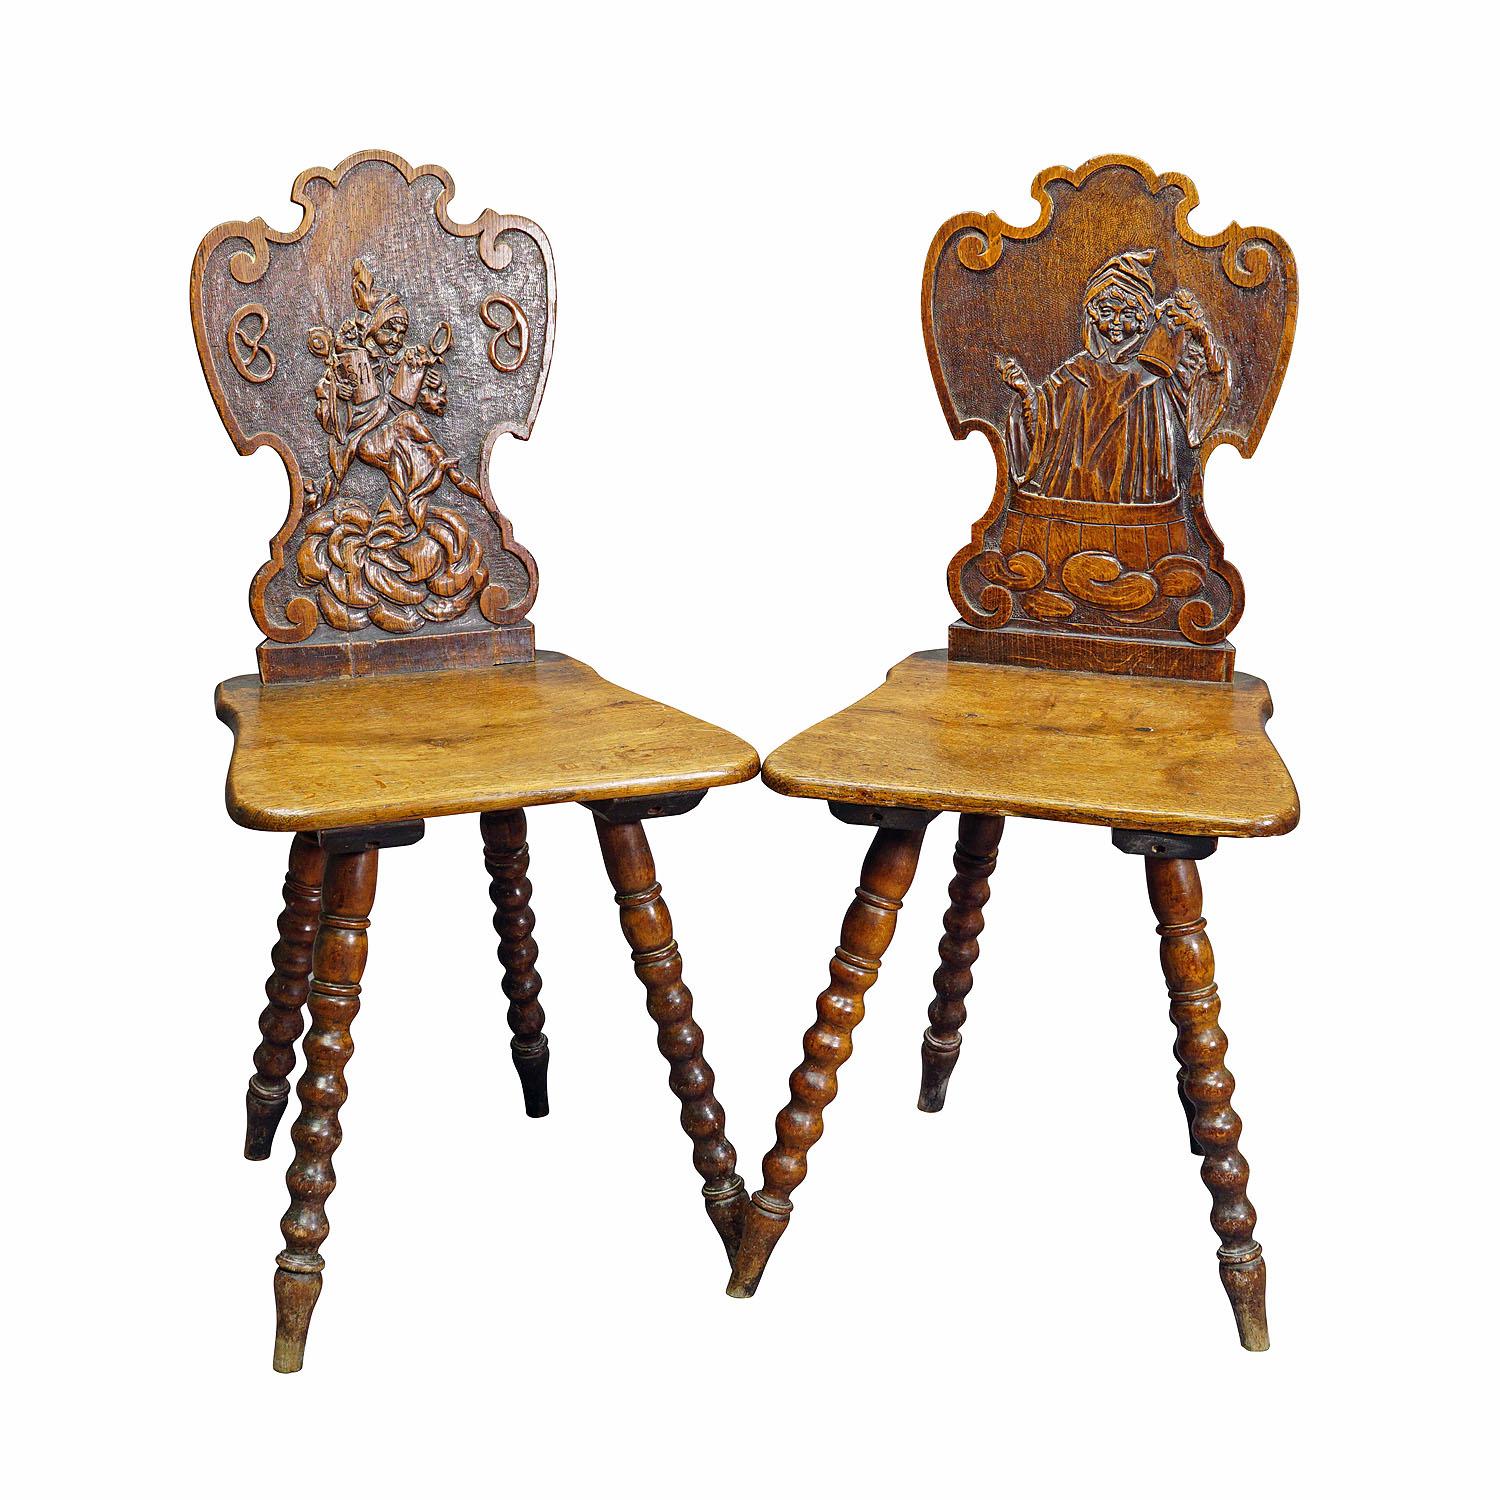 Paire de chaises bavaroises sculptées sur panneau, vers 1900

Paire de magnifiques chaises en bois de chêne sculpté provenant d'une célèbre auberge de Munich. Les dossiers sont sculptés de scènes folkloriques fantaisistes du Munich Kindl (enfant de